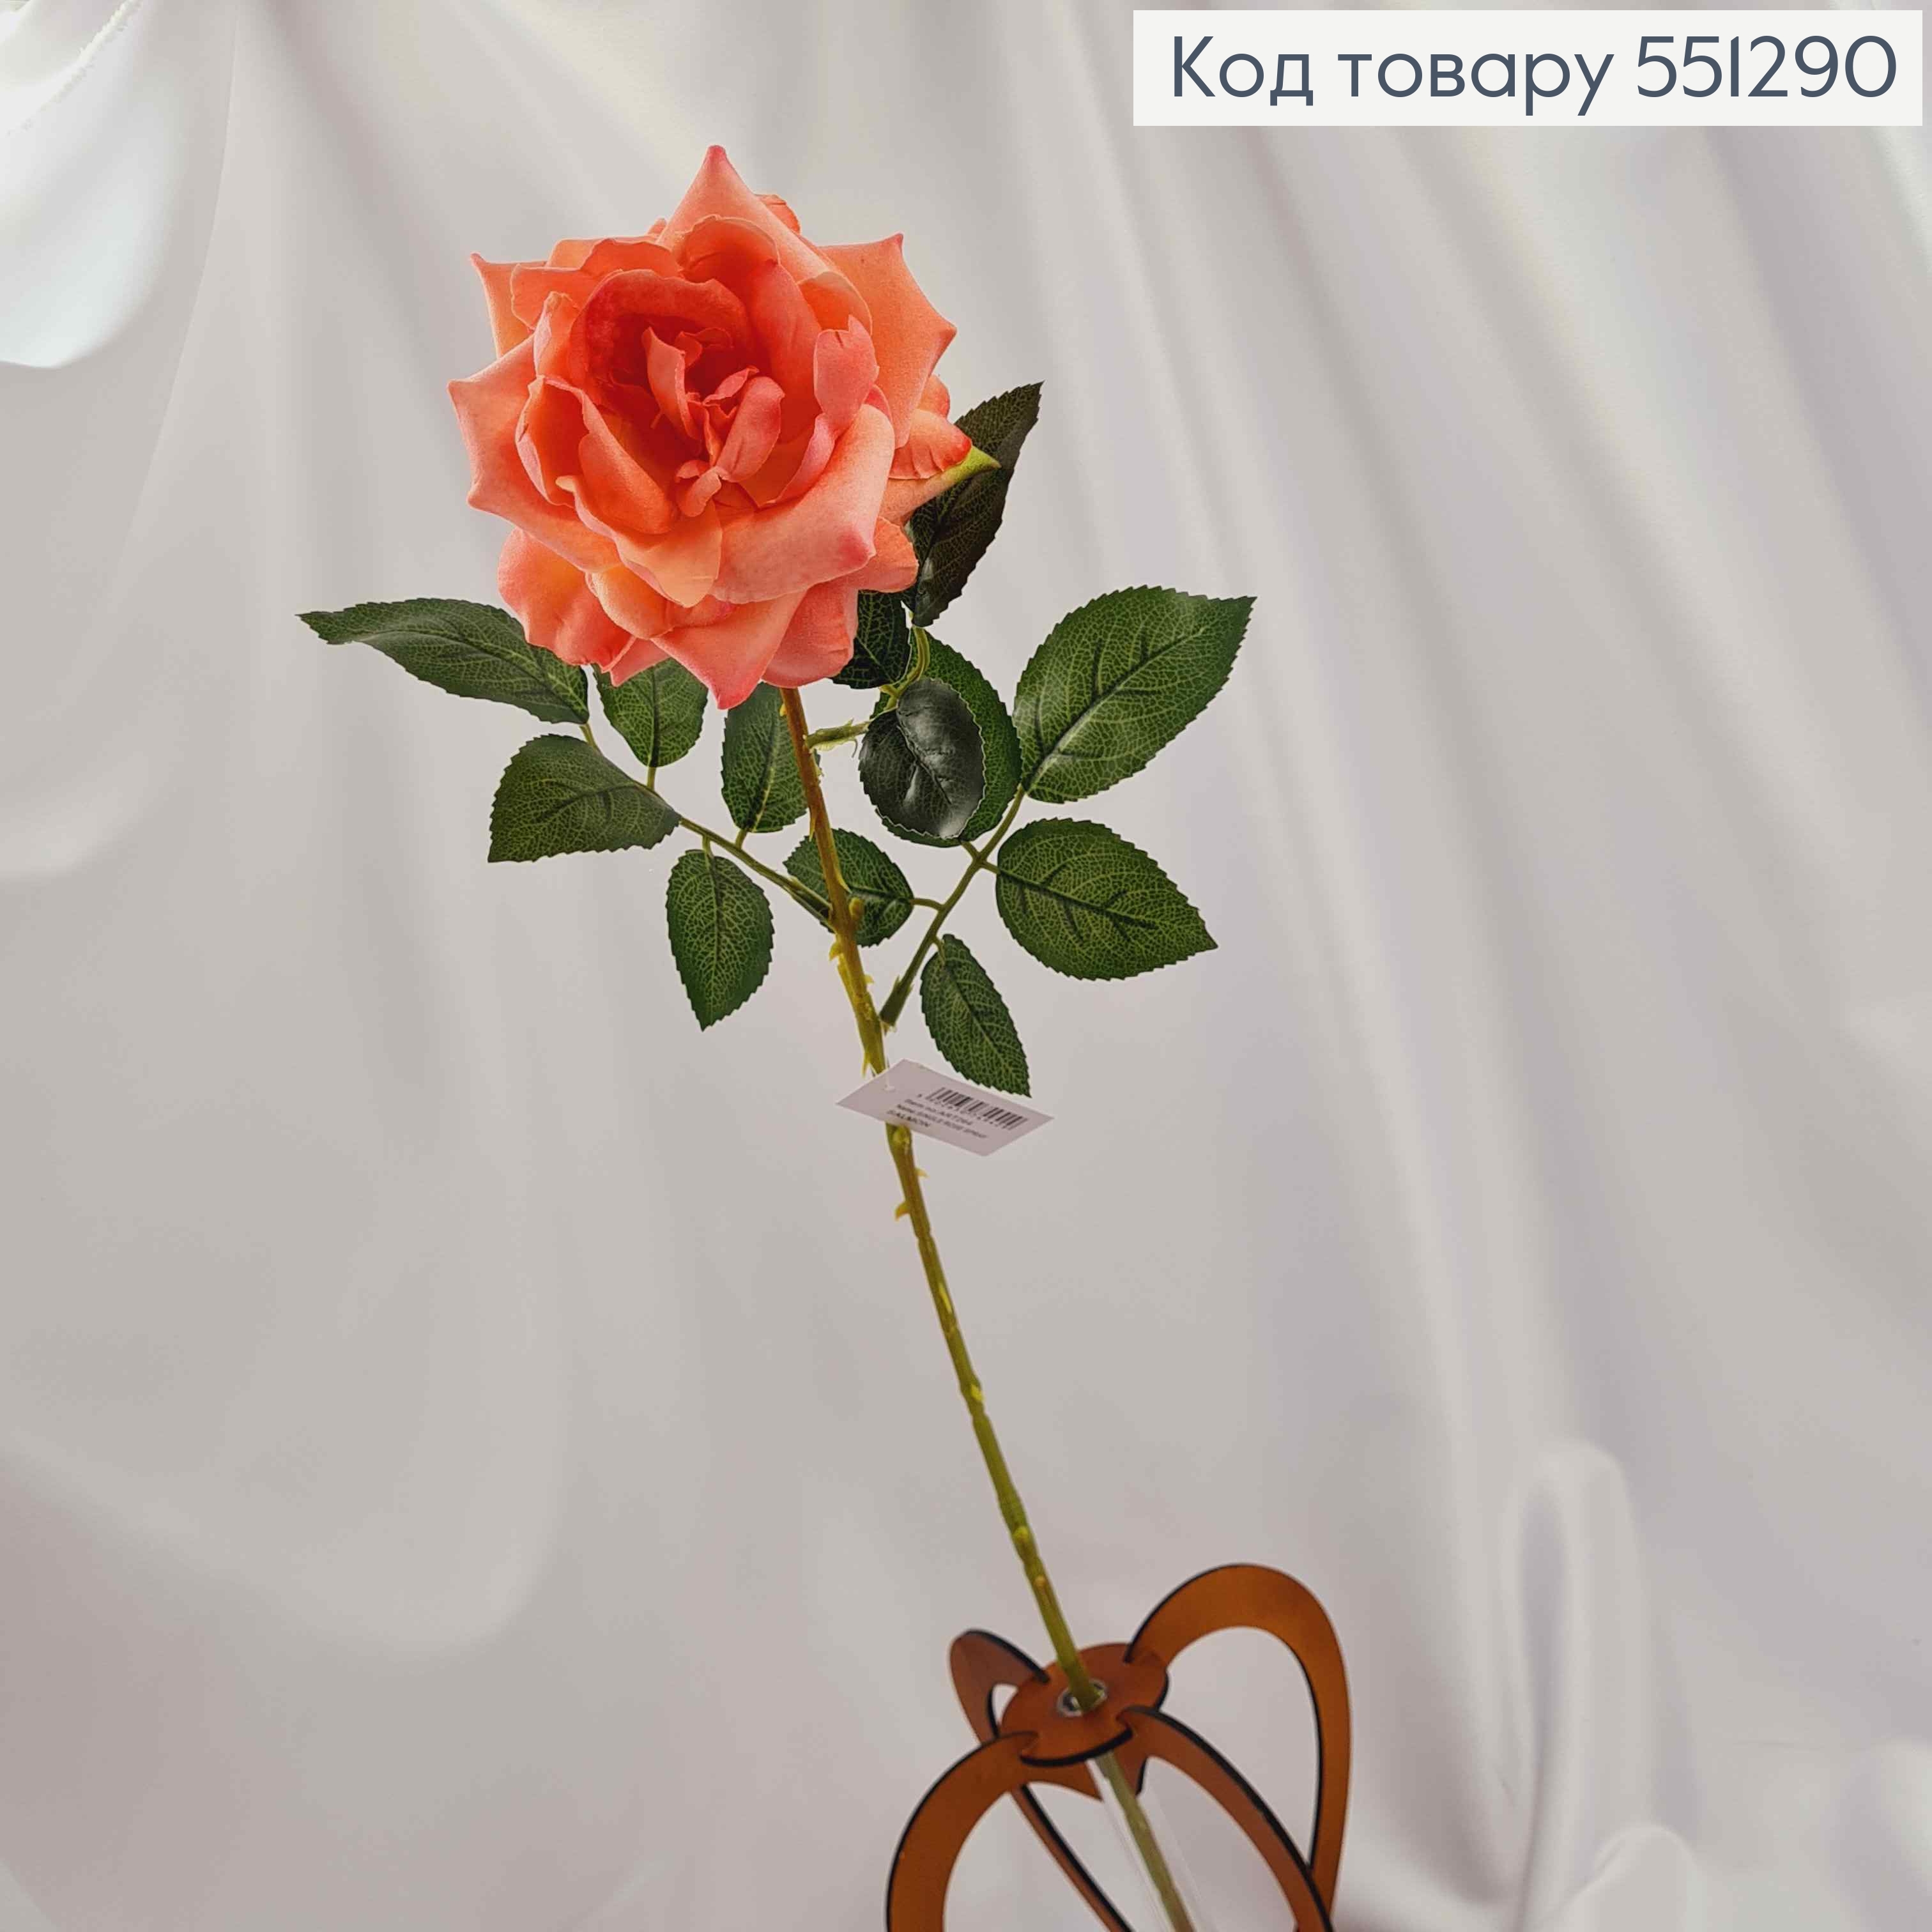 Искусственный цветок, бархатная Роза 10см, нежно персиковая, композиция высотой 62см. 551290 фото 2